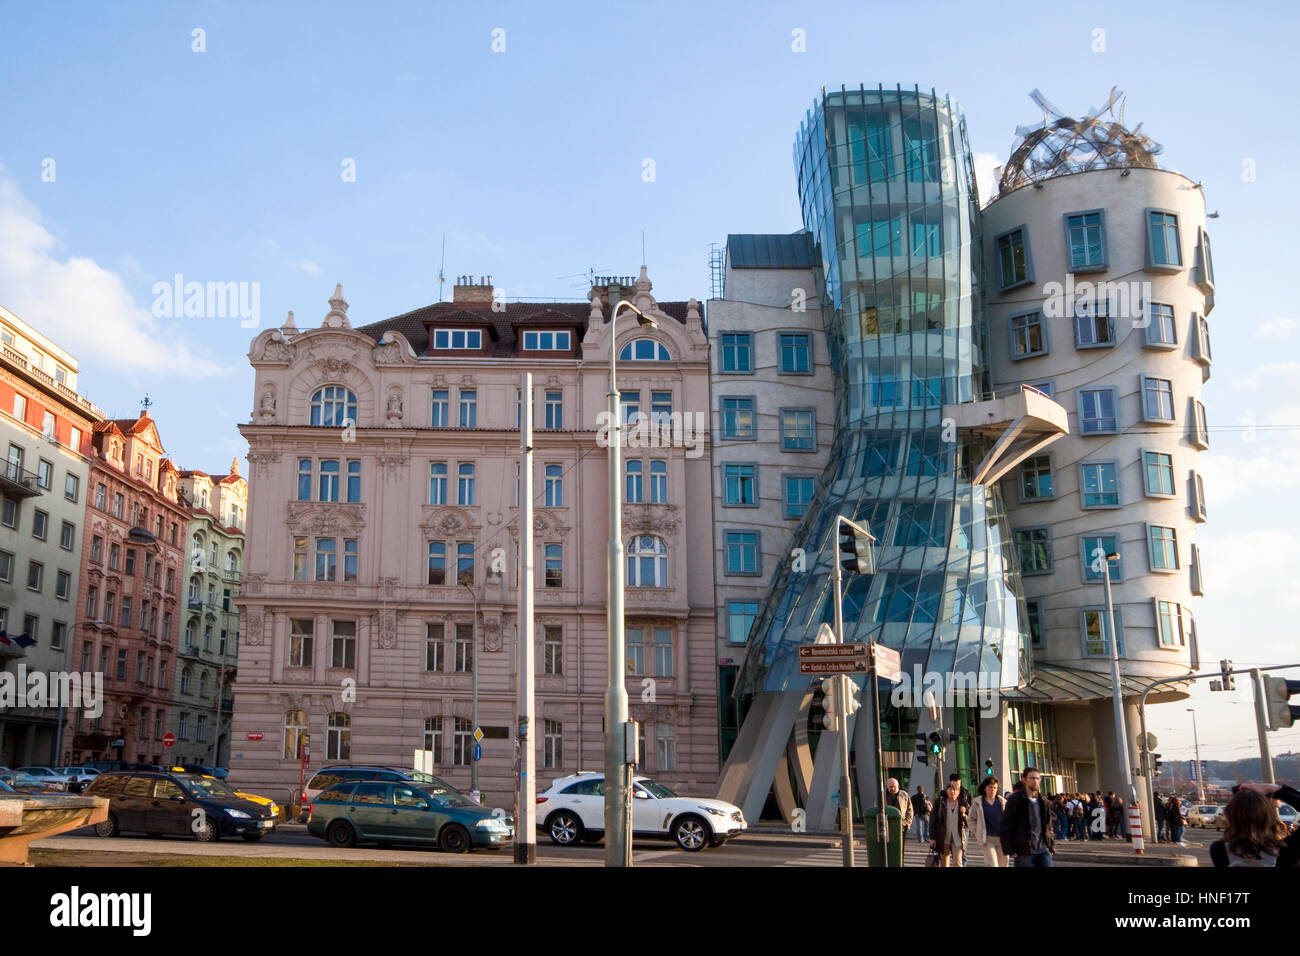 République tchèque, Prague Le Rasin AKA Bâtiment bâtiment Ginger et Fred, l'architecte Frank Gehry Banque D'Images